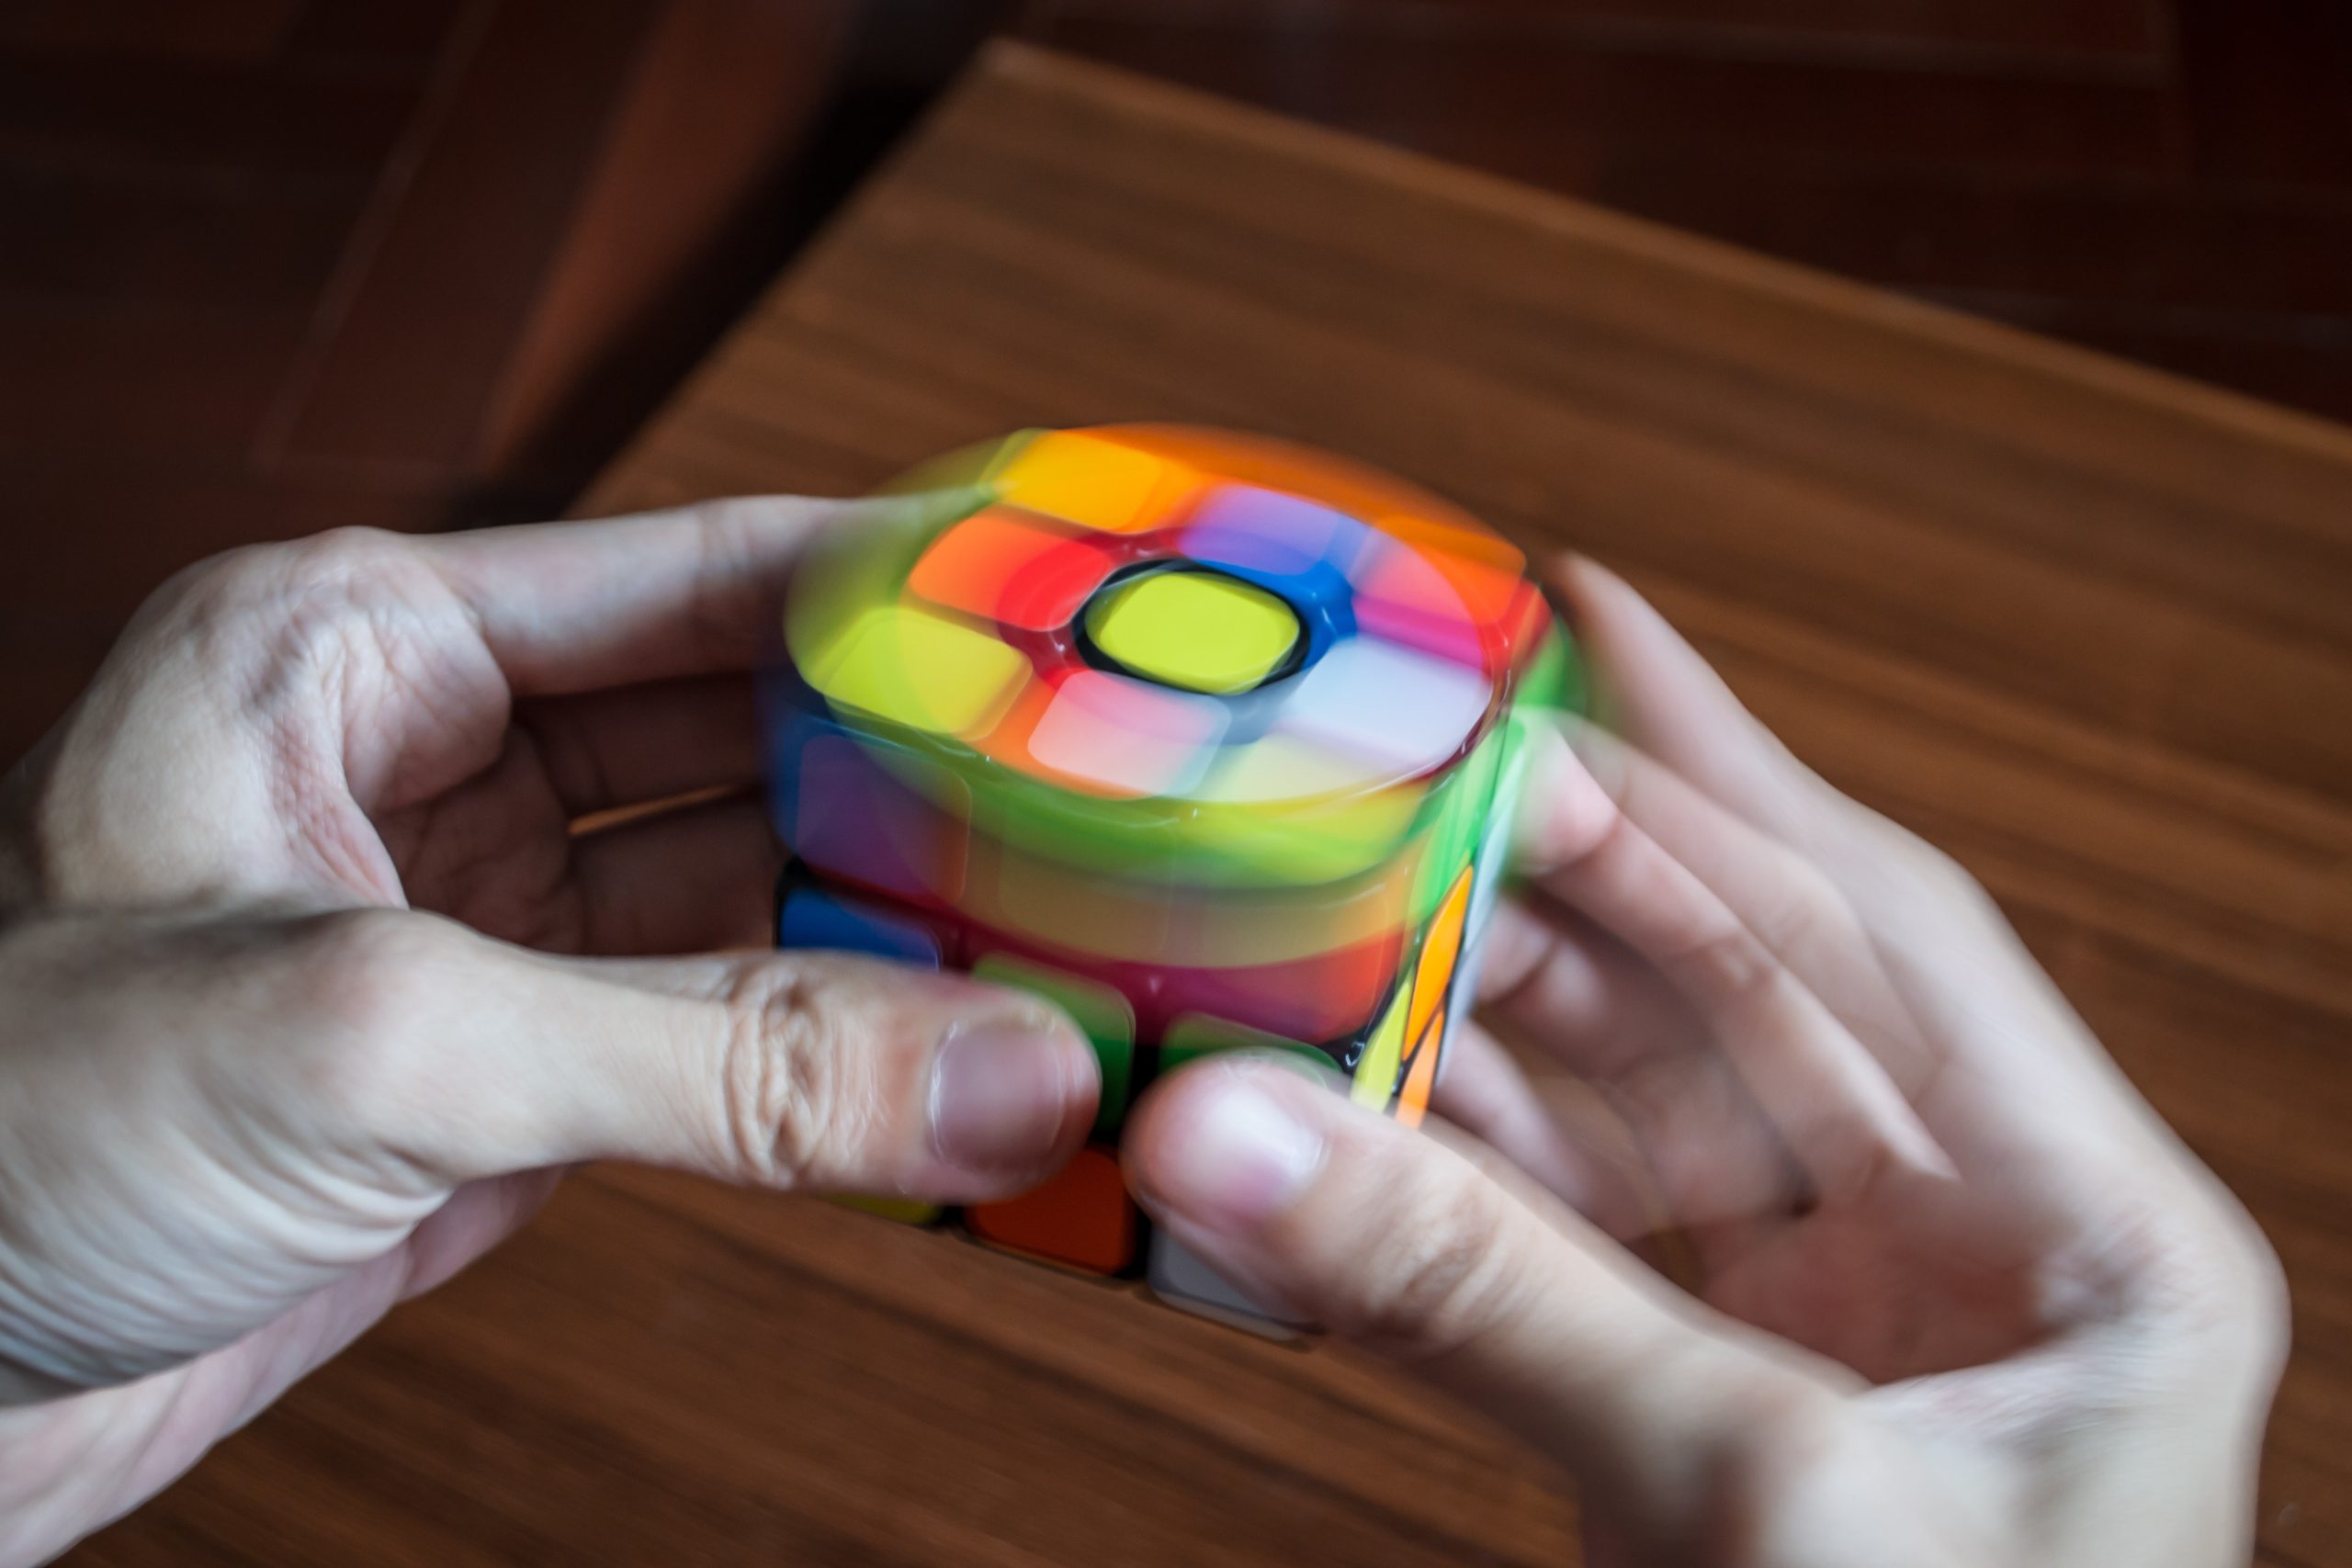 Kostka Rubika i jej ciekawe odpowiedniki